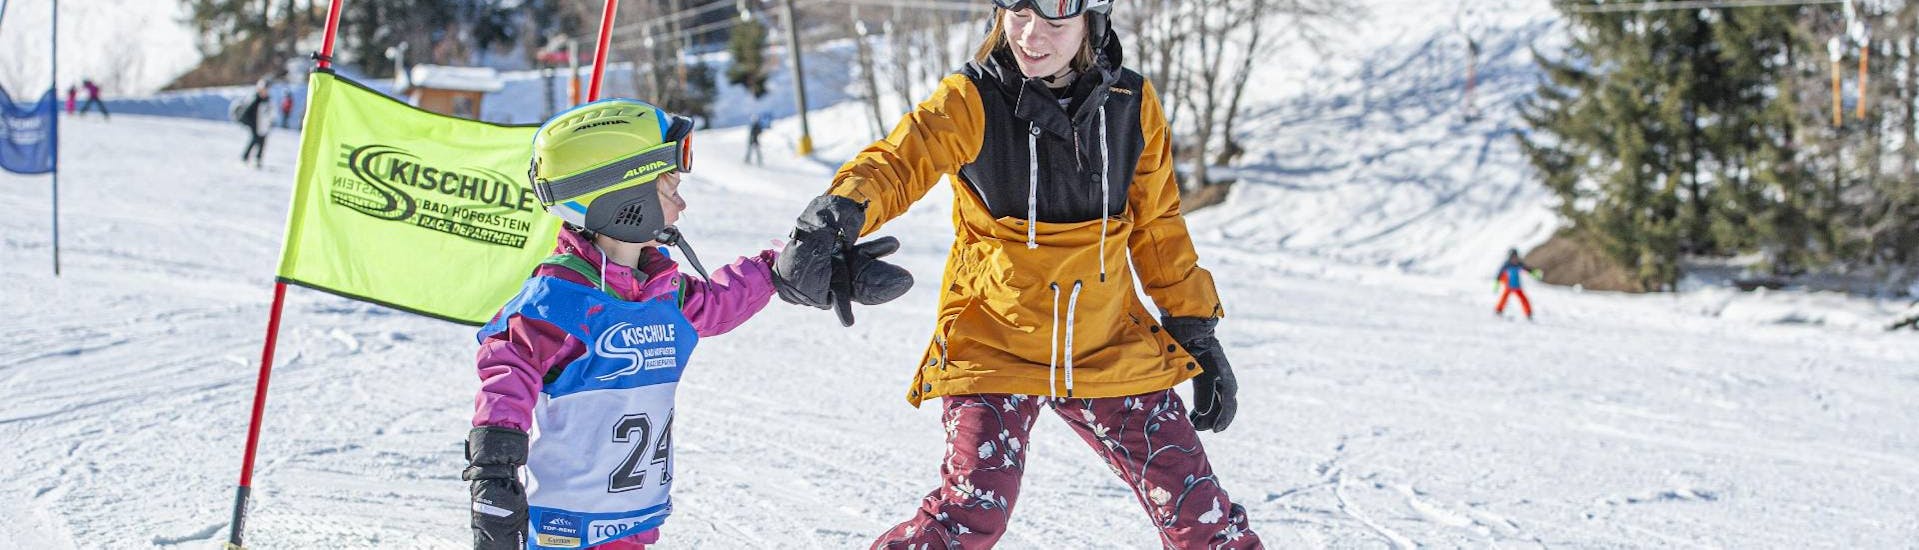 Een ouder kind helpt een jonger kind tijdens de kinderskiles voor beginners bij skischule Bad Hofgastein.